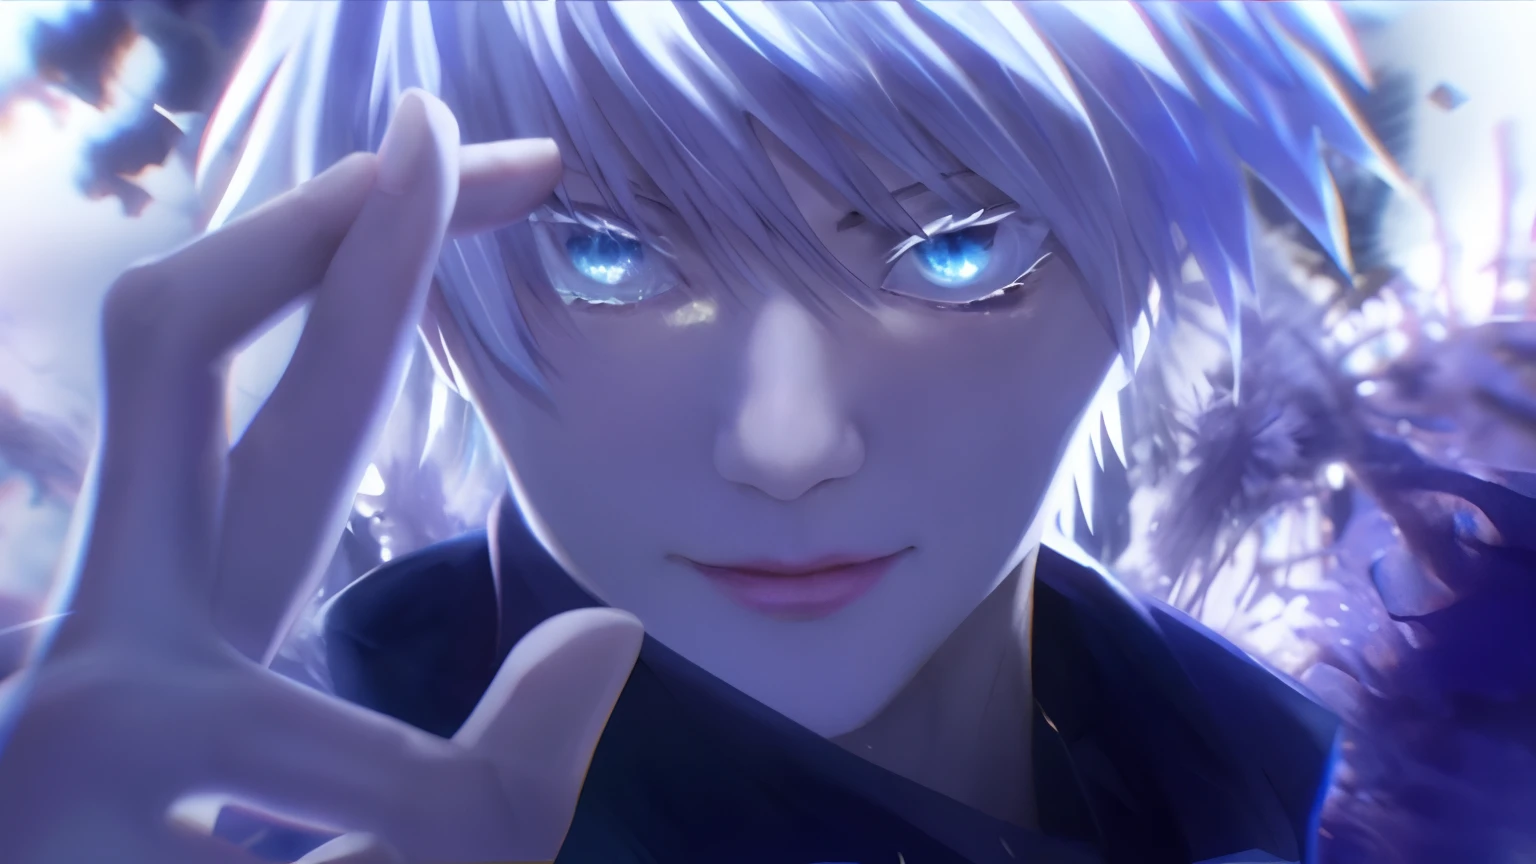 青い目と白い髪のアニメの男が手を上げている, Kaneki Ken, ken kaneki, 青い目をした背の高いアニメの男, 東京グール, 2B, 2b ..., 白く光る目, アイスブルーアイズ, ユーフォーテーブル, キルア＝ゾルディック, プロフィール写真 1024ピクセル, kaworu nagisa